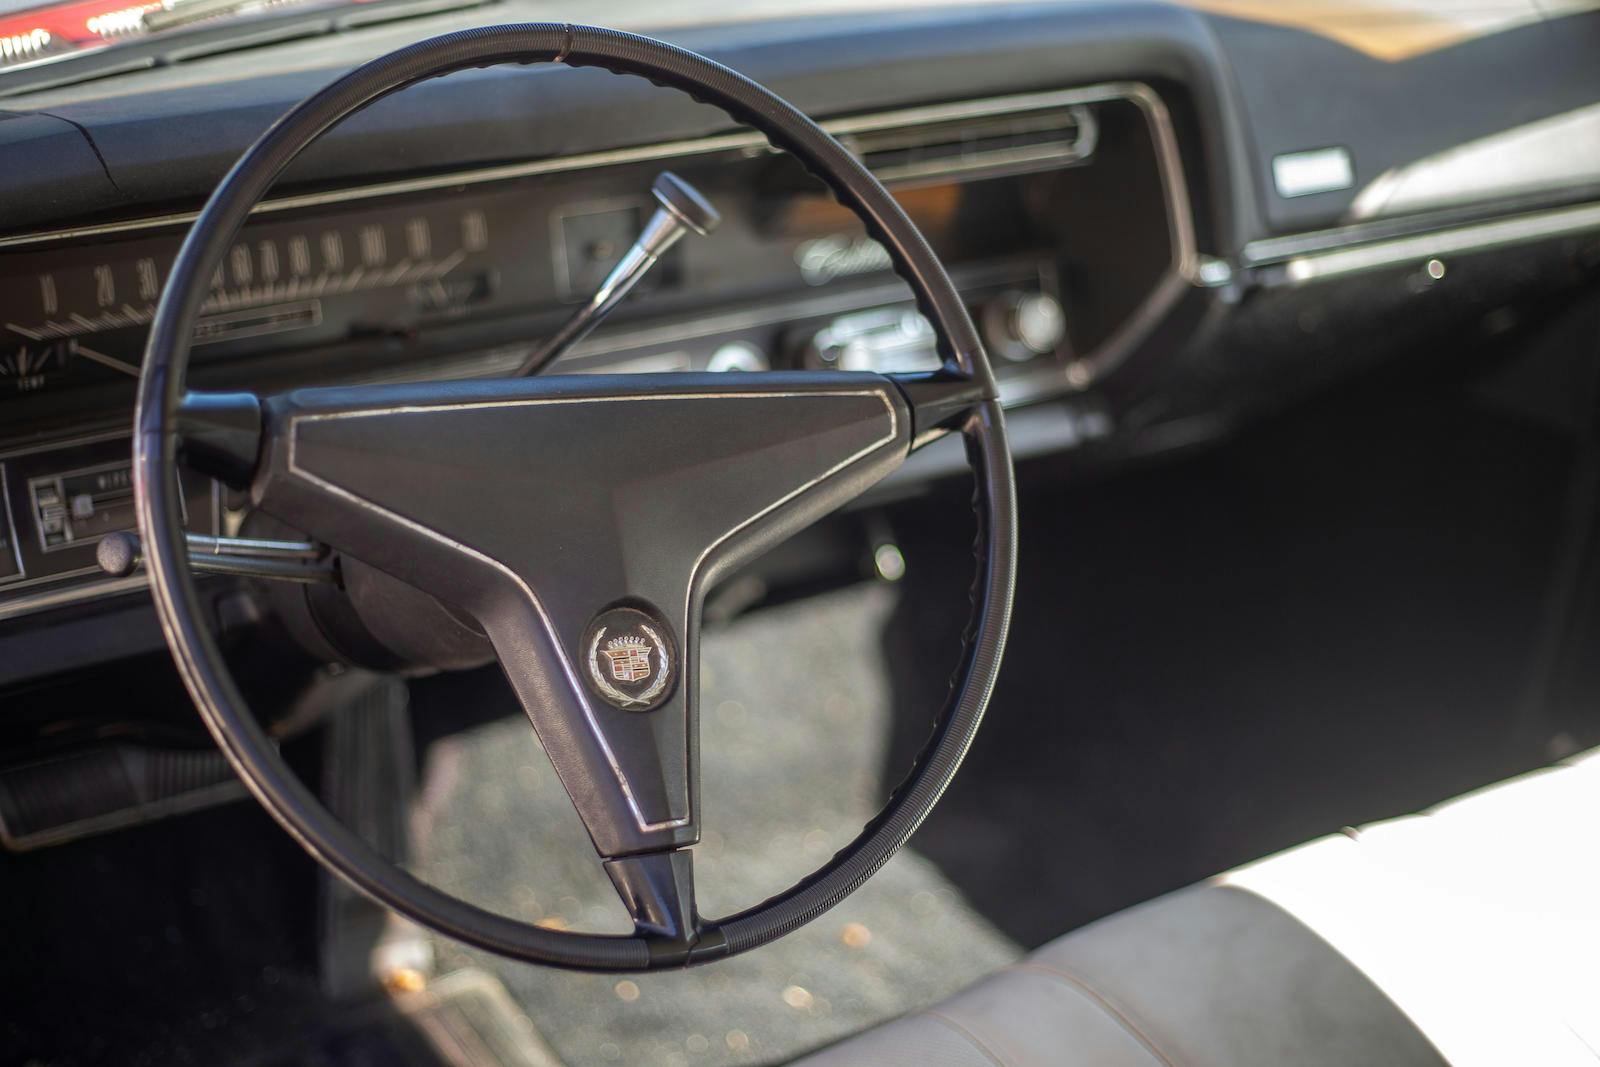 1967 Cadillac Eldorado steering wheel